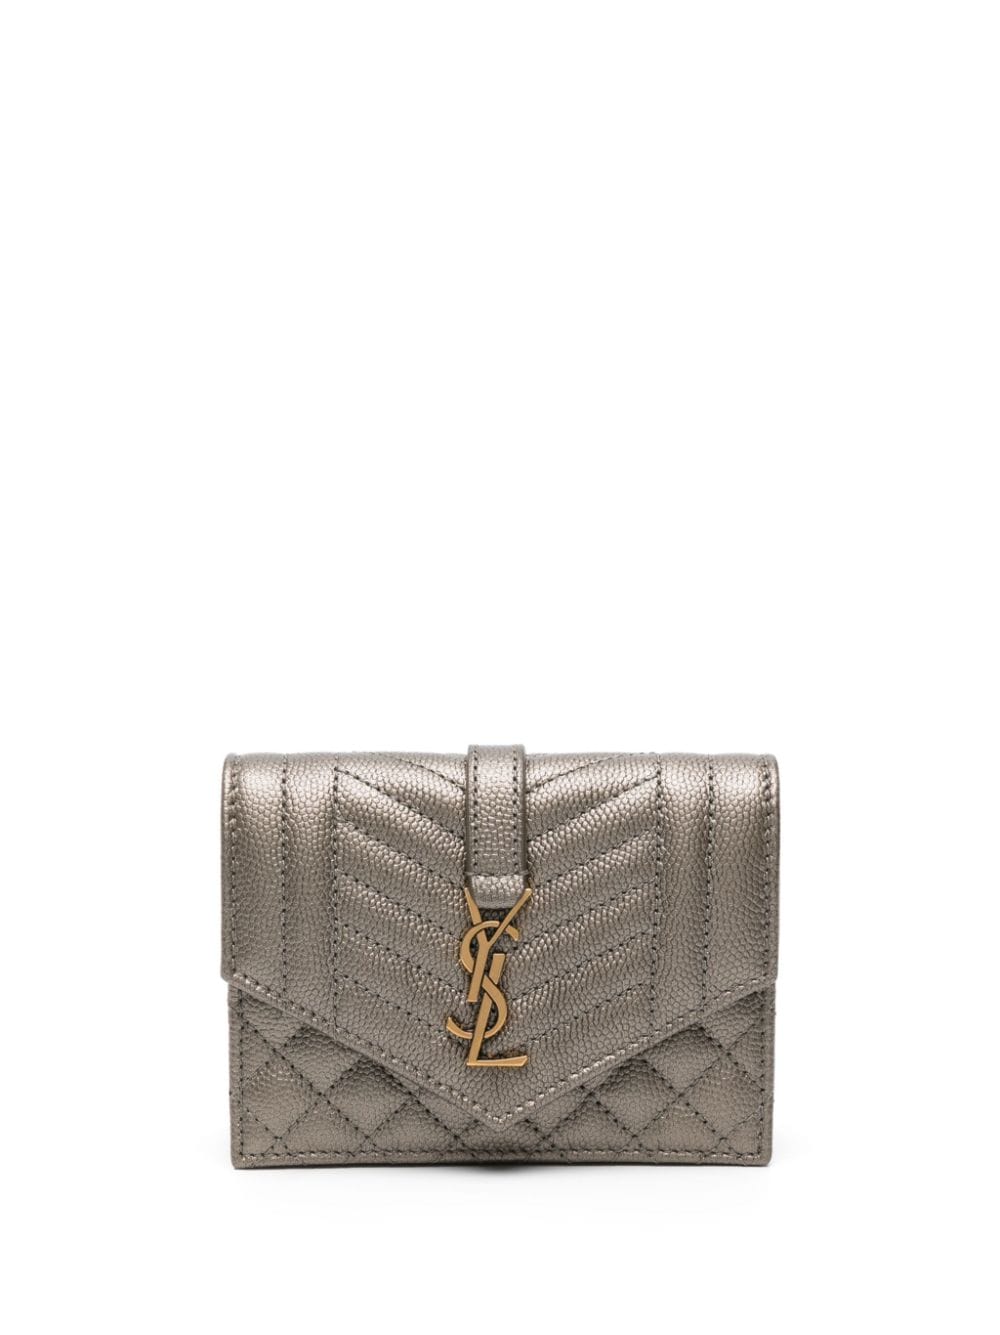 Saint Laurent quilted leather wallet - Brown von Saint Laurent